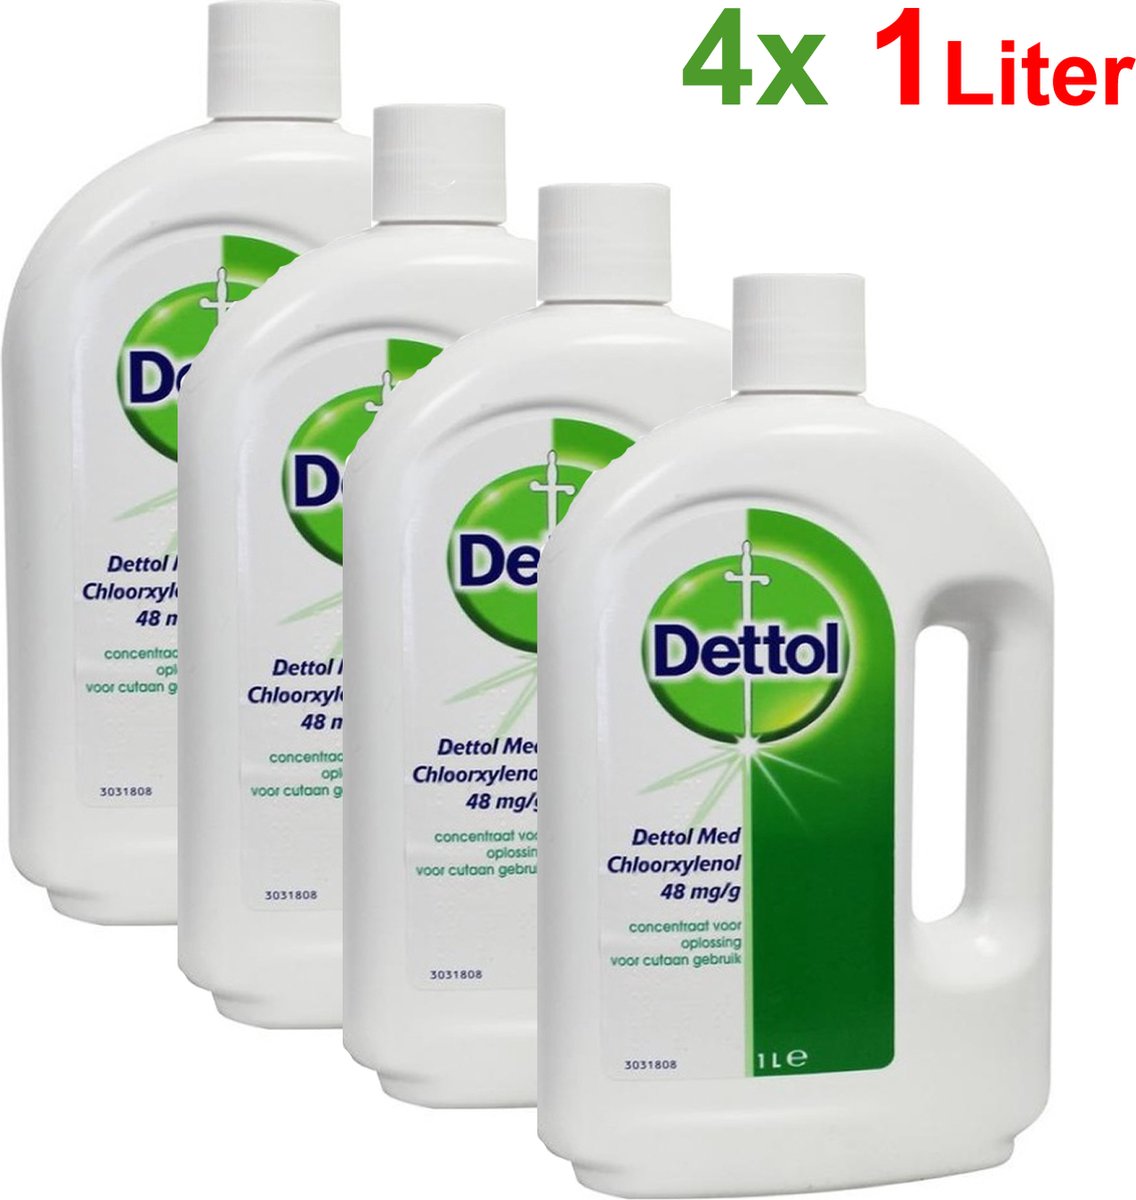 Dettolpharma 4 liter ontsmettingsmiddel Dettol | bol.com